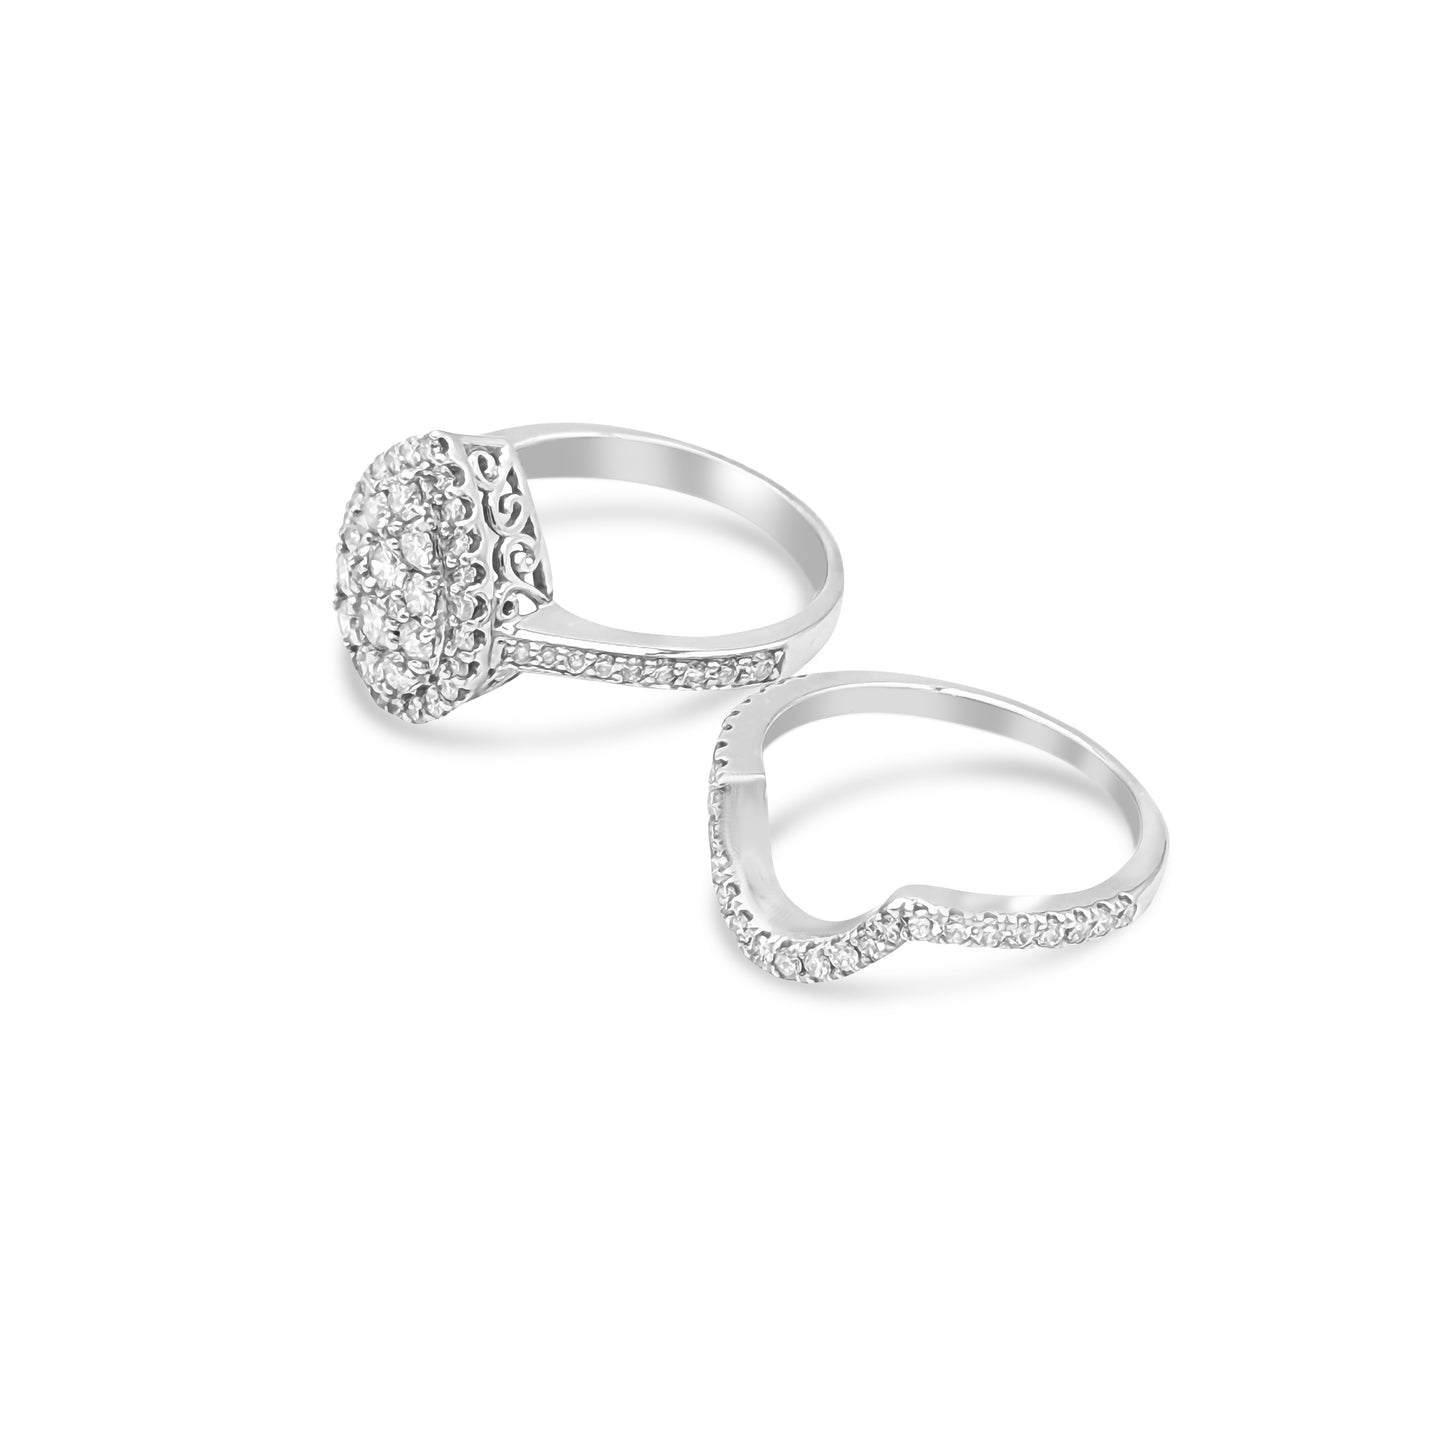 14K - White Gold Round Diamond Ring Bridal Set - TDW 1.29 CT